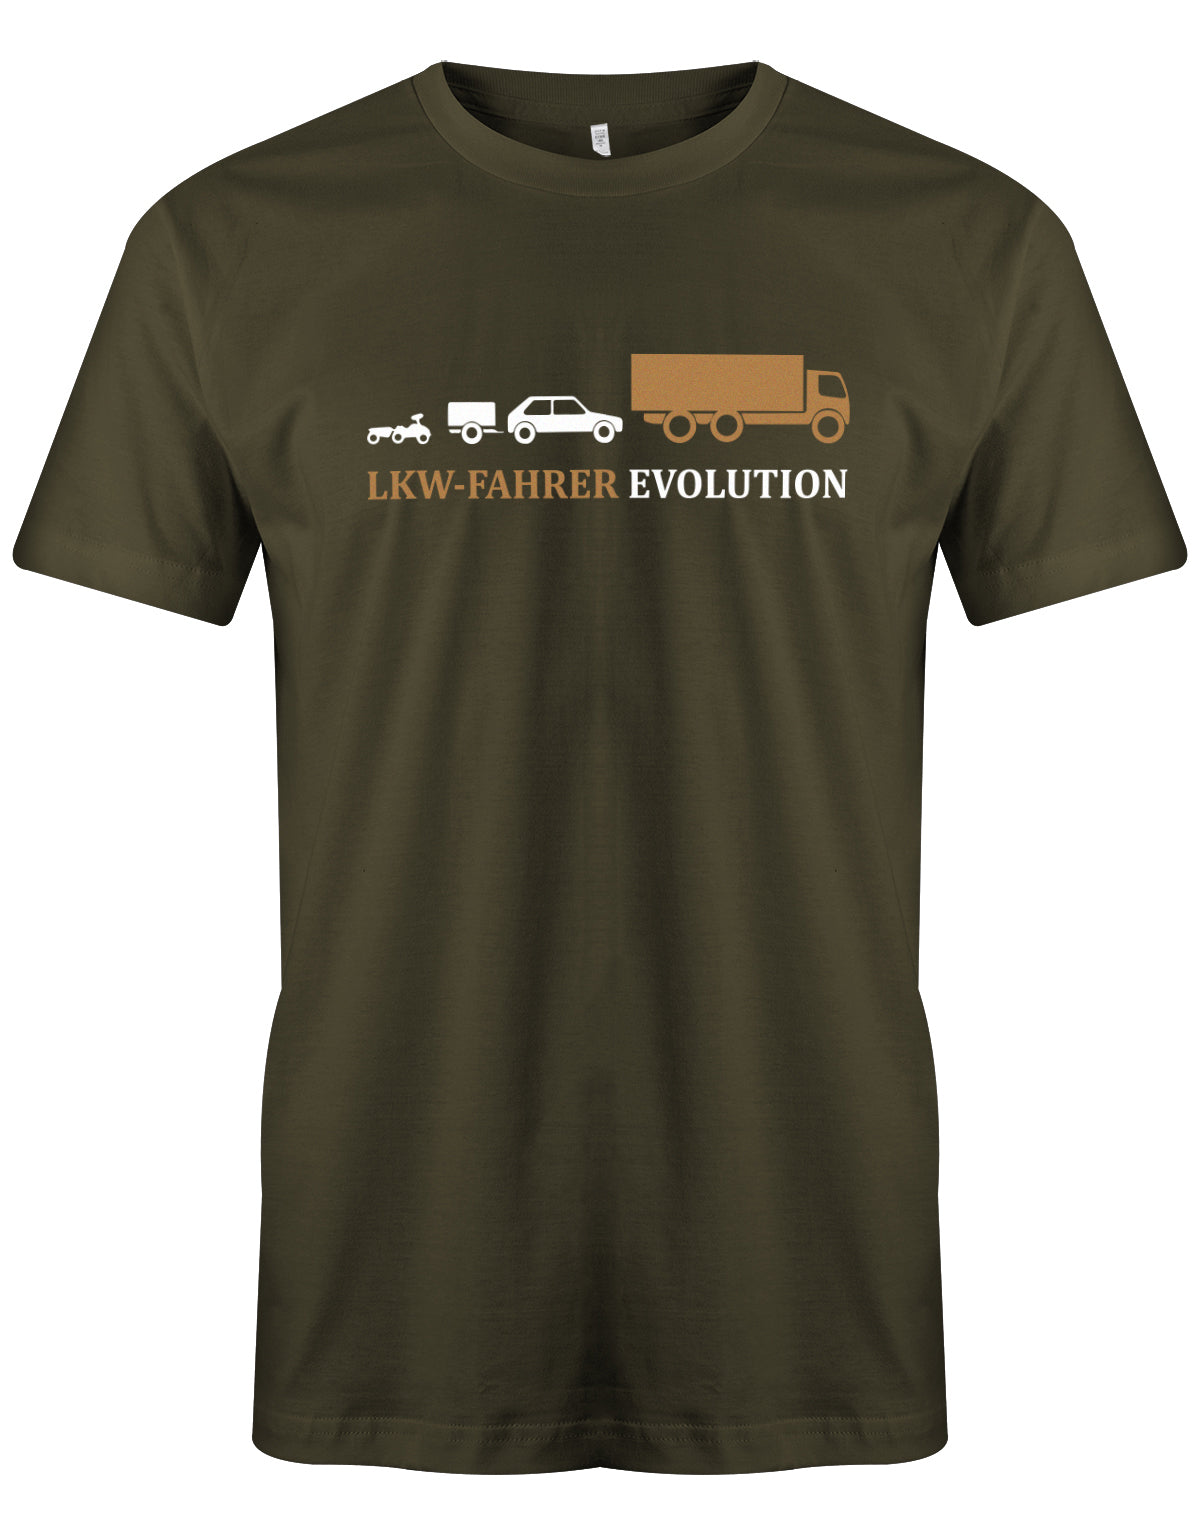 Lkw-Fahrer Shirt - Lkw-Fahrer Evolution Army